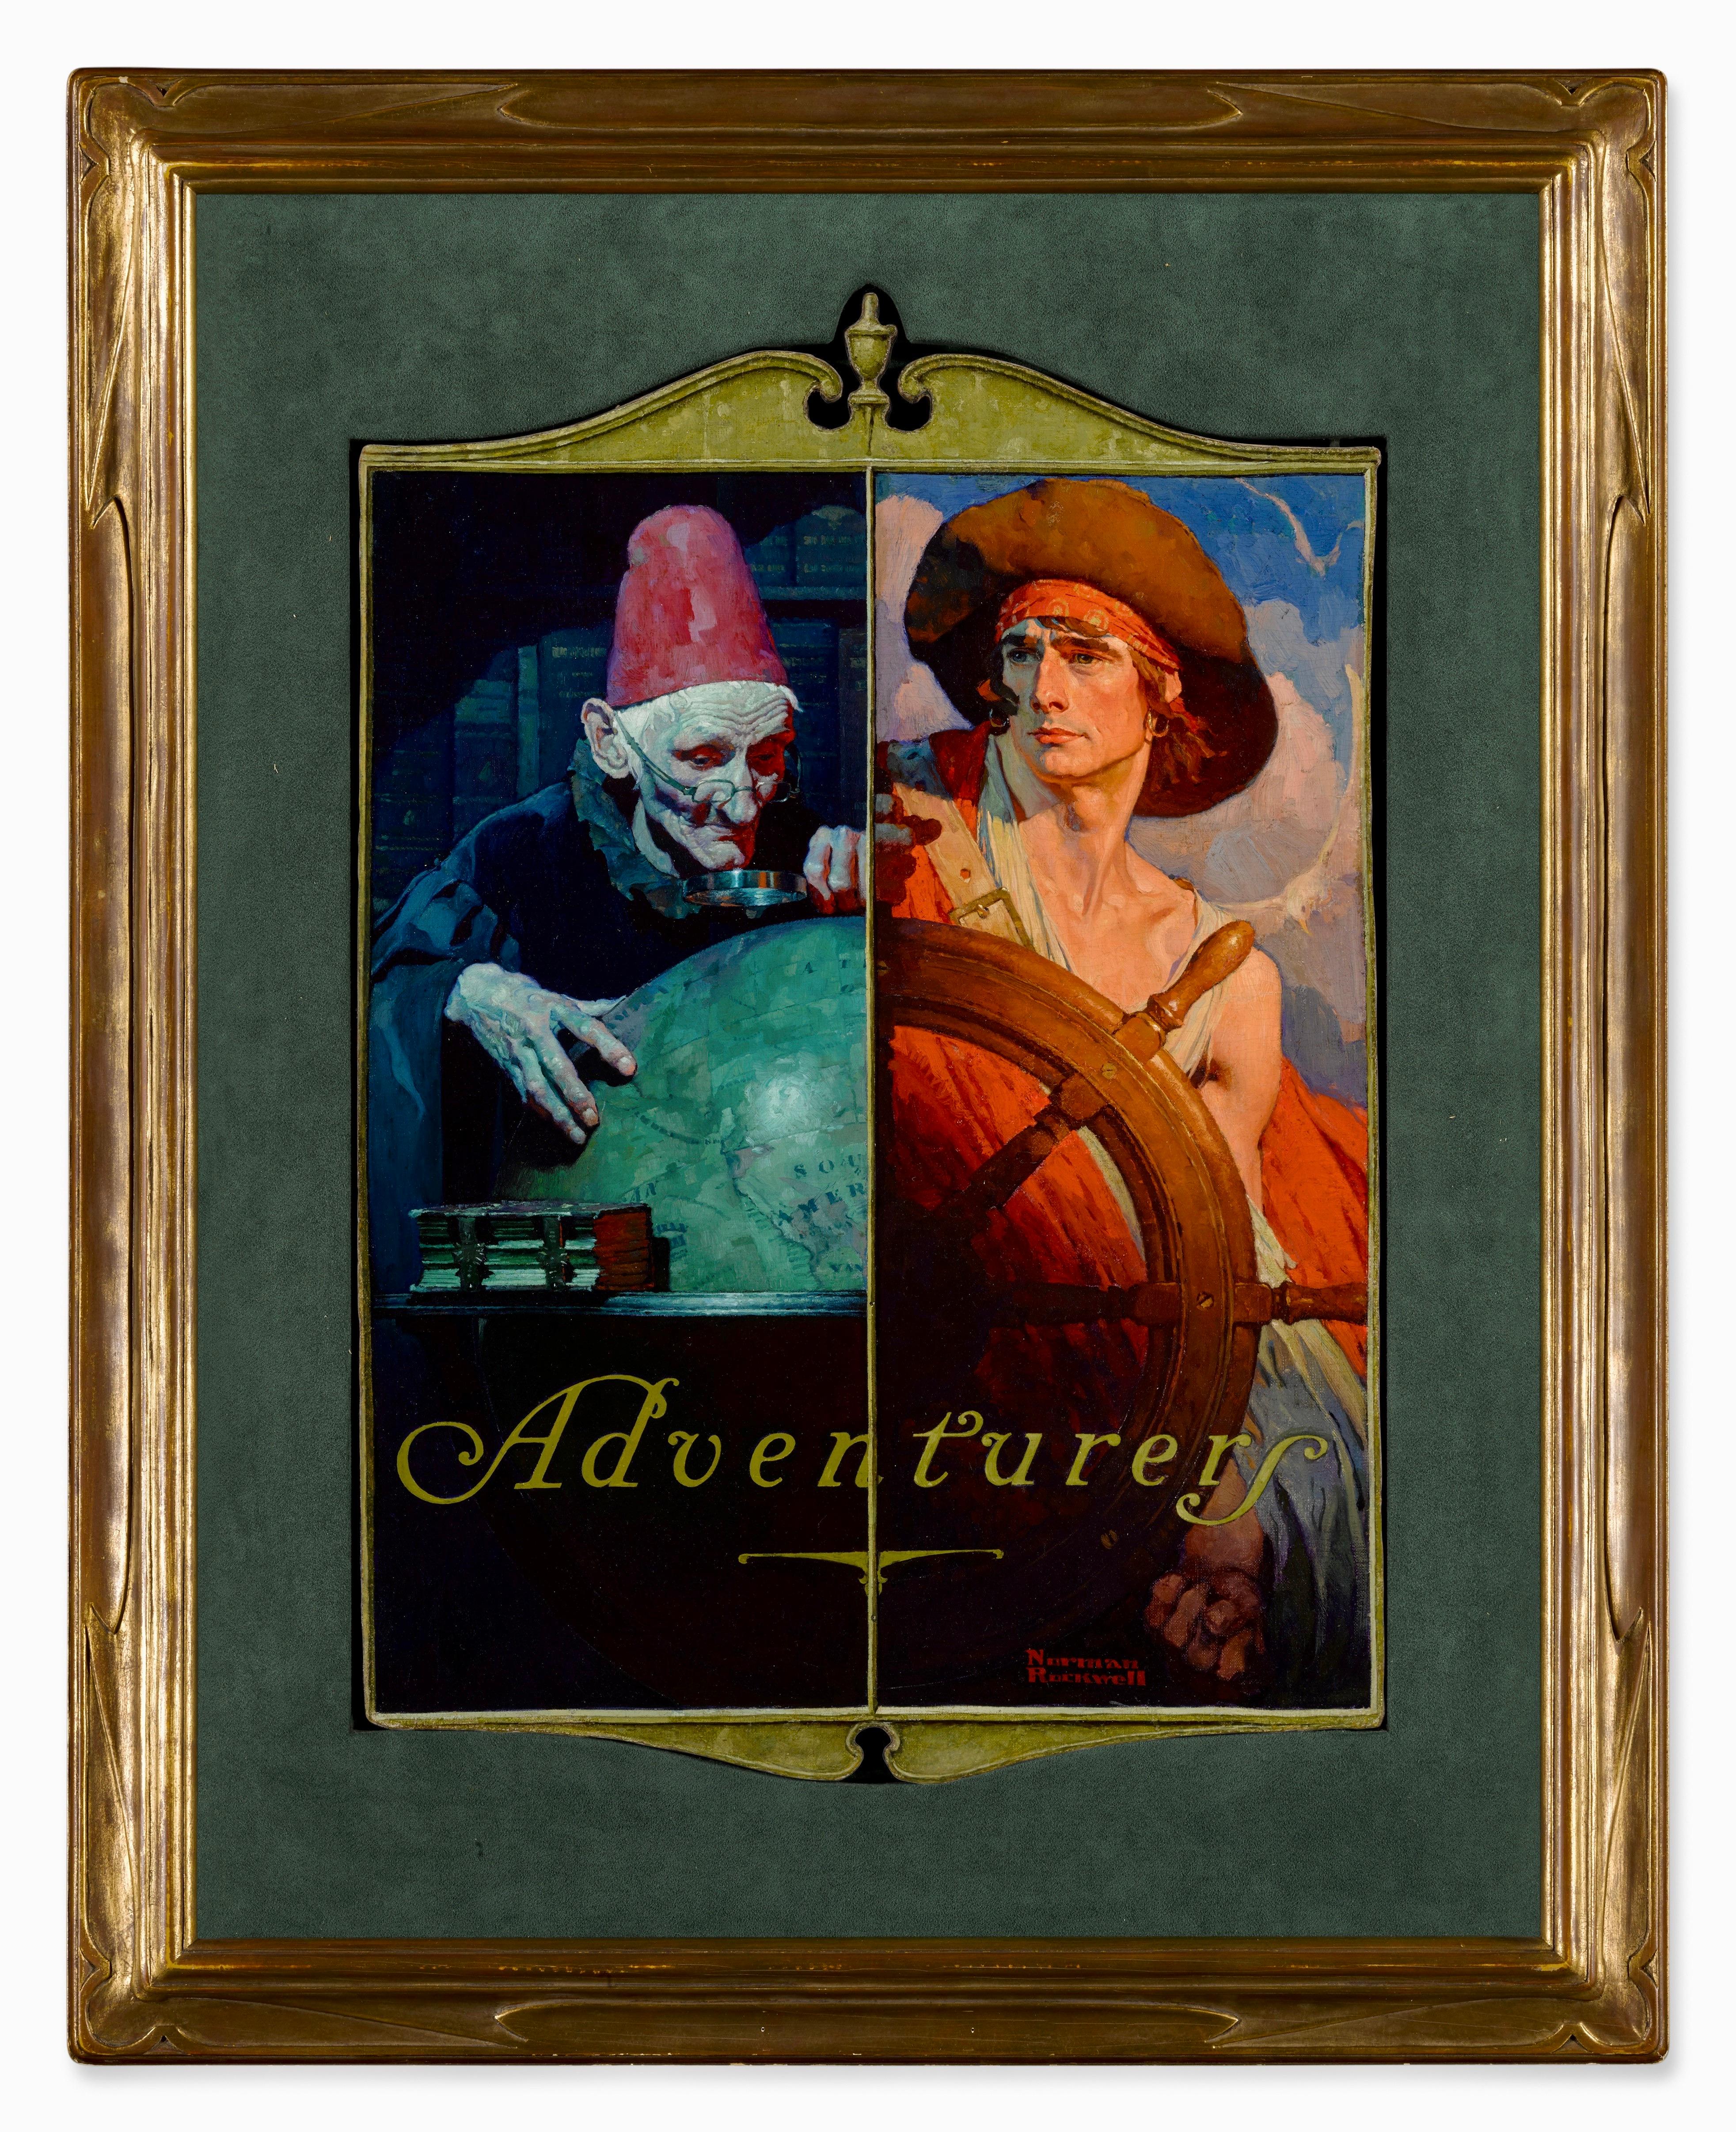 Les aventuriers, couverture - Painting de Norman Rockwell